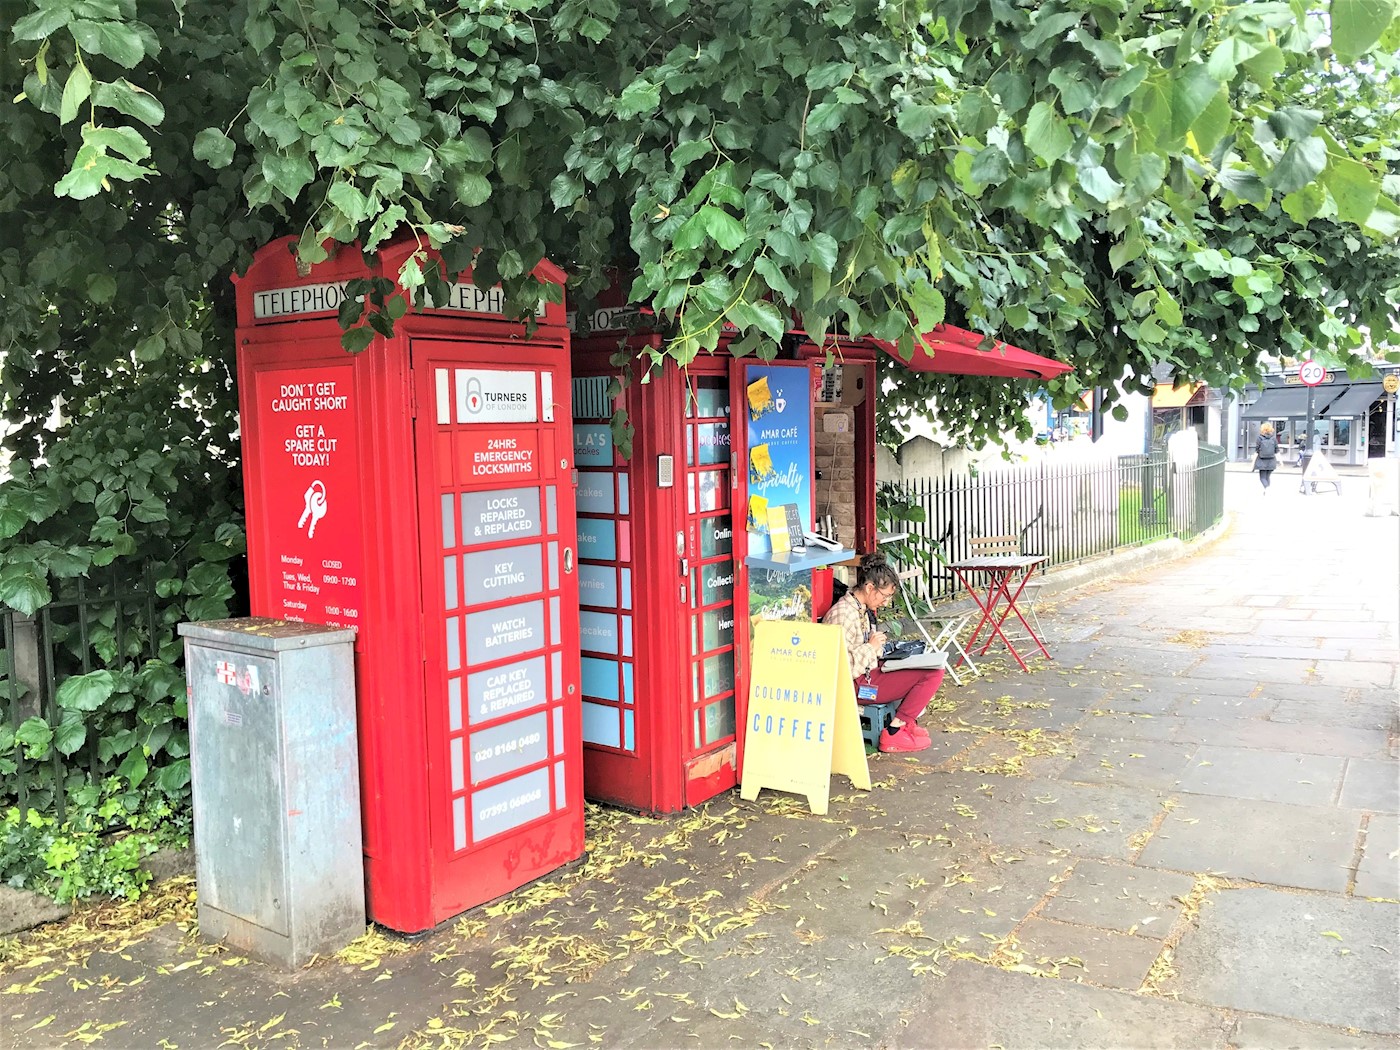 Telephone Kiosk 2 (M), o/s the Mitre Hotel, Greenwich High Road, Greenwich, SE10 8NA 1/6